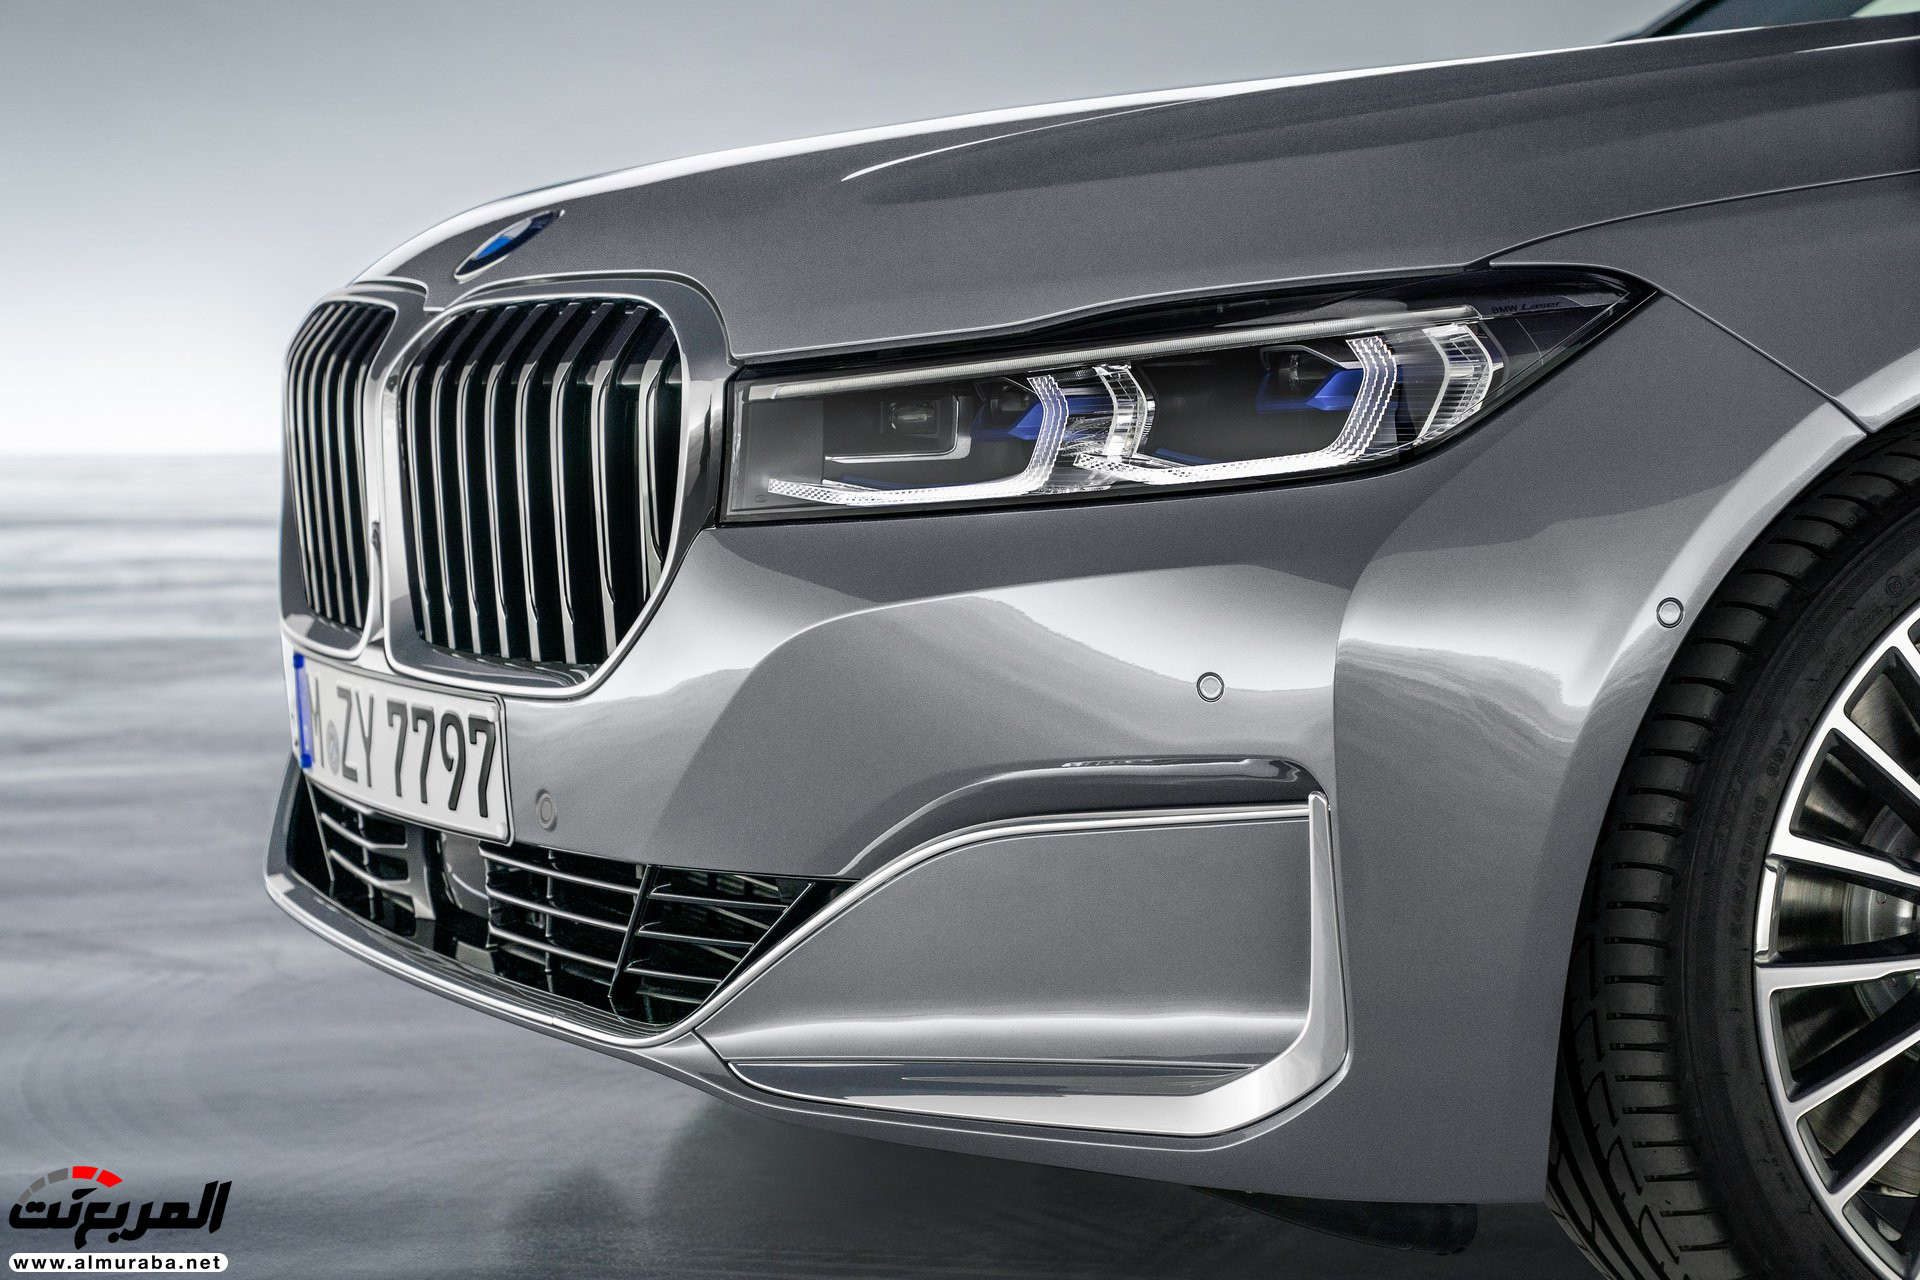 بي ام دبليو الفئة السابعة 2020 المحدثة تكشف نفسها رسمياً "صور ومواصفات" BMW 7 Series 235